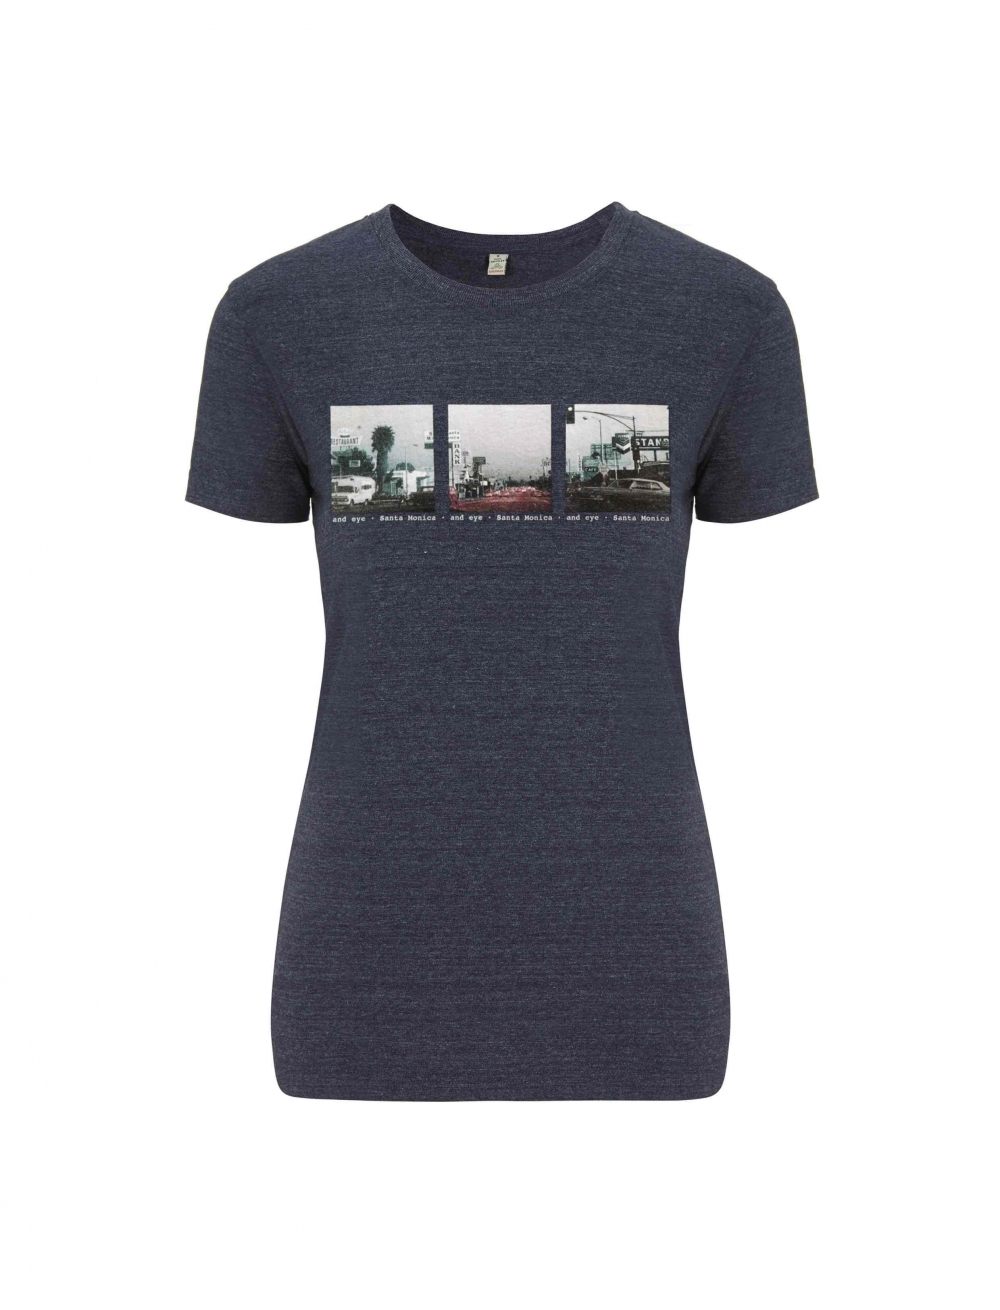 Camiseta ecológica y reciclada con imagen vintage de Santa Monica